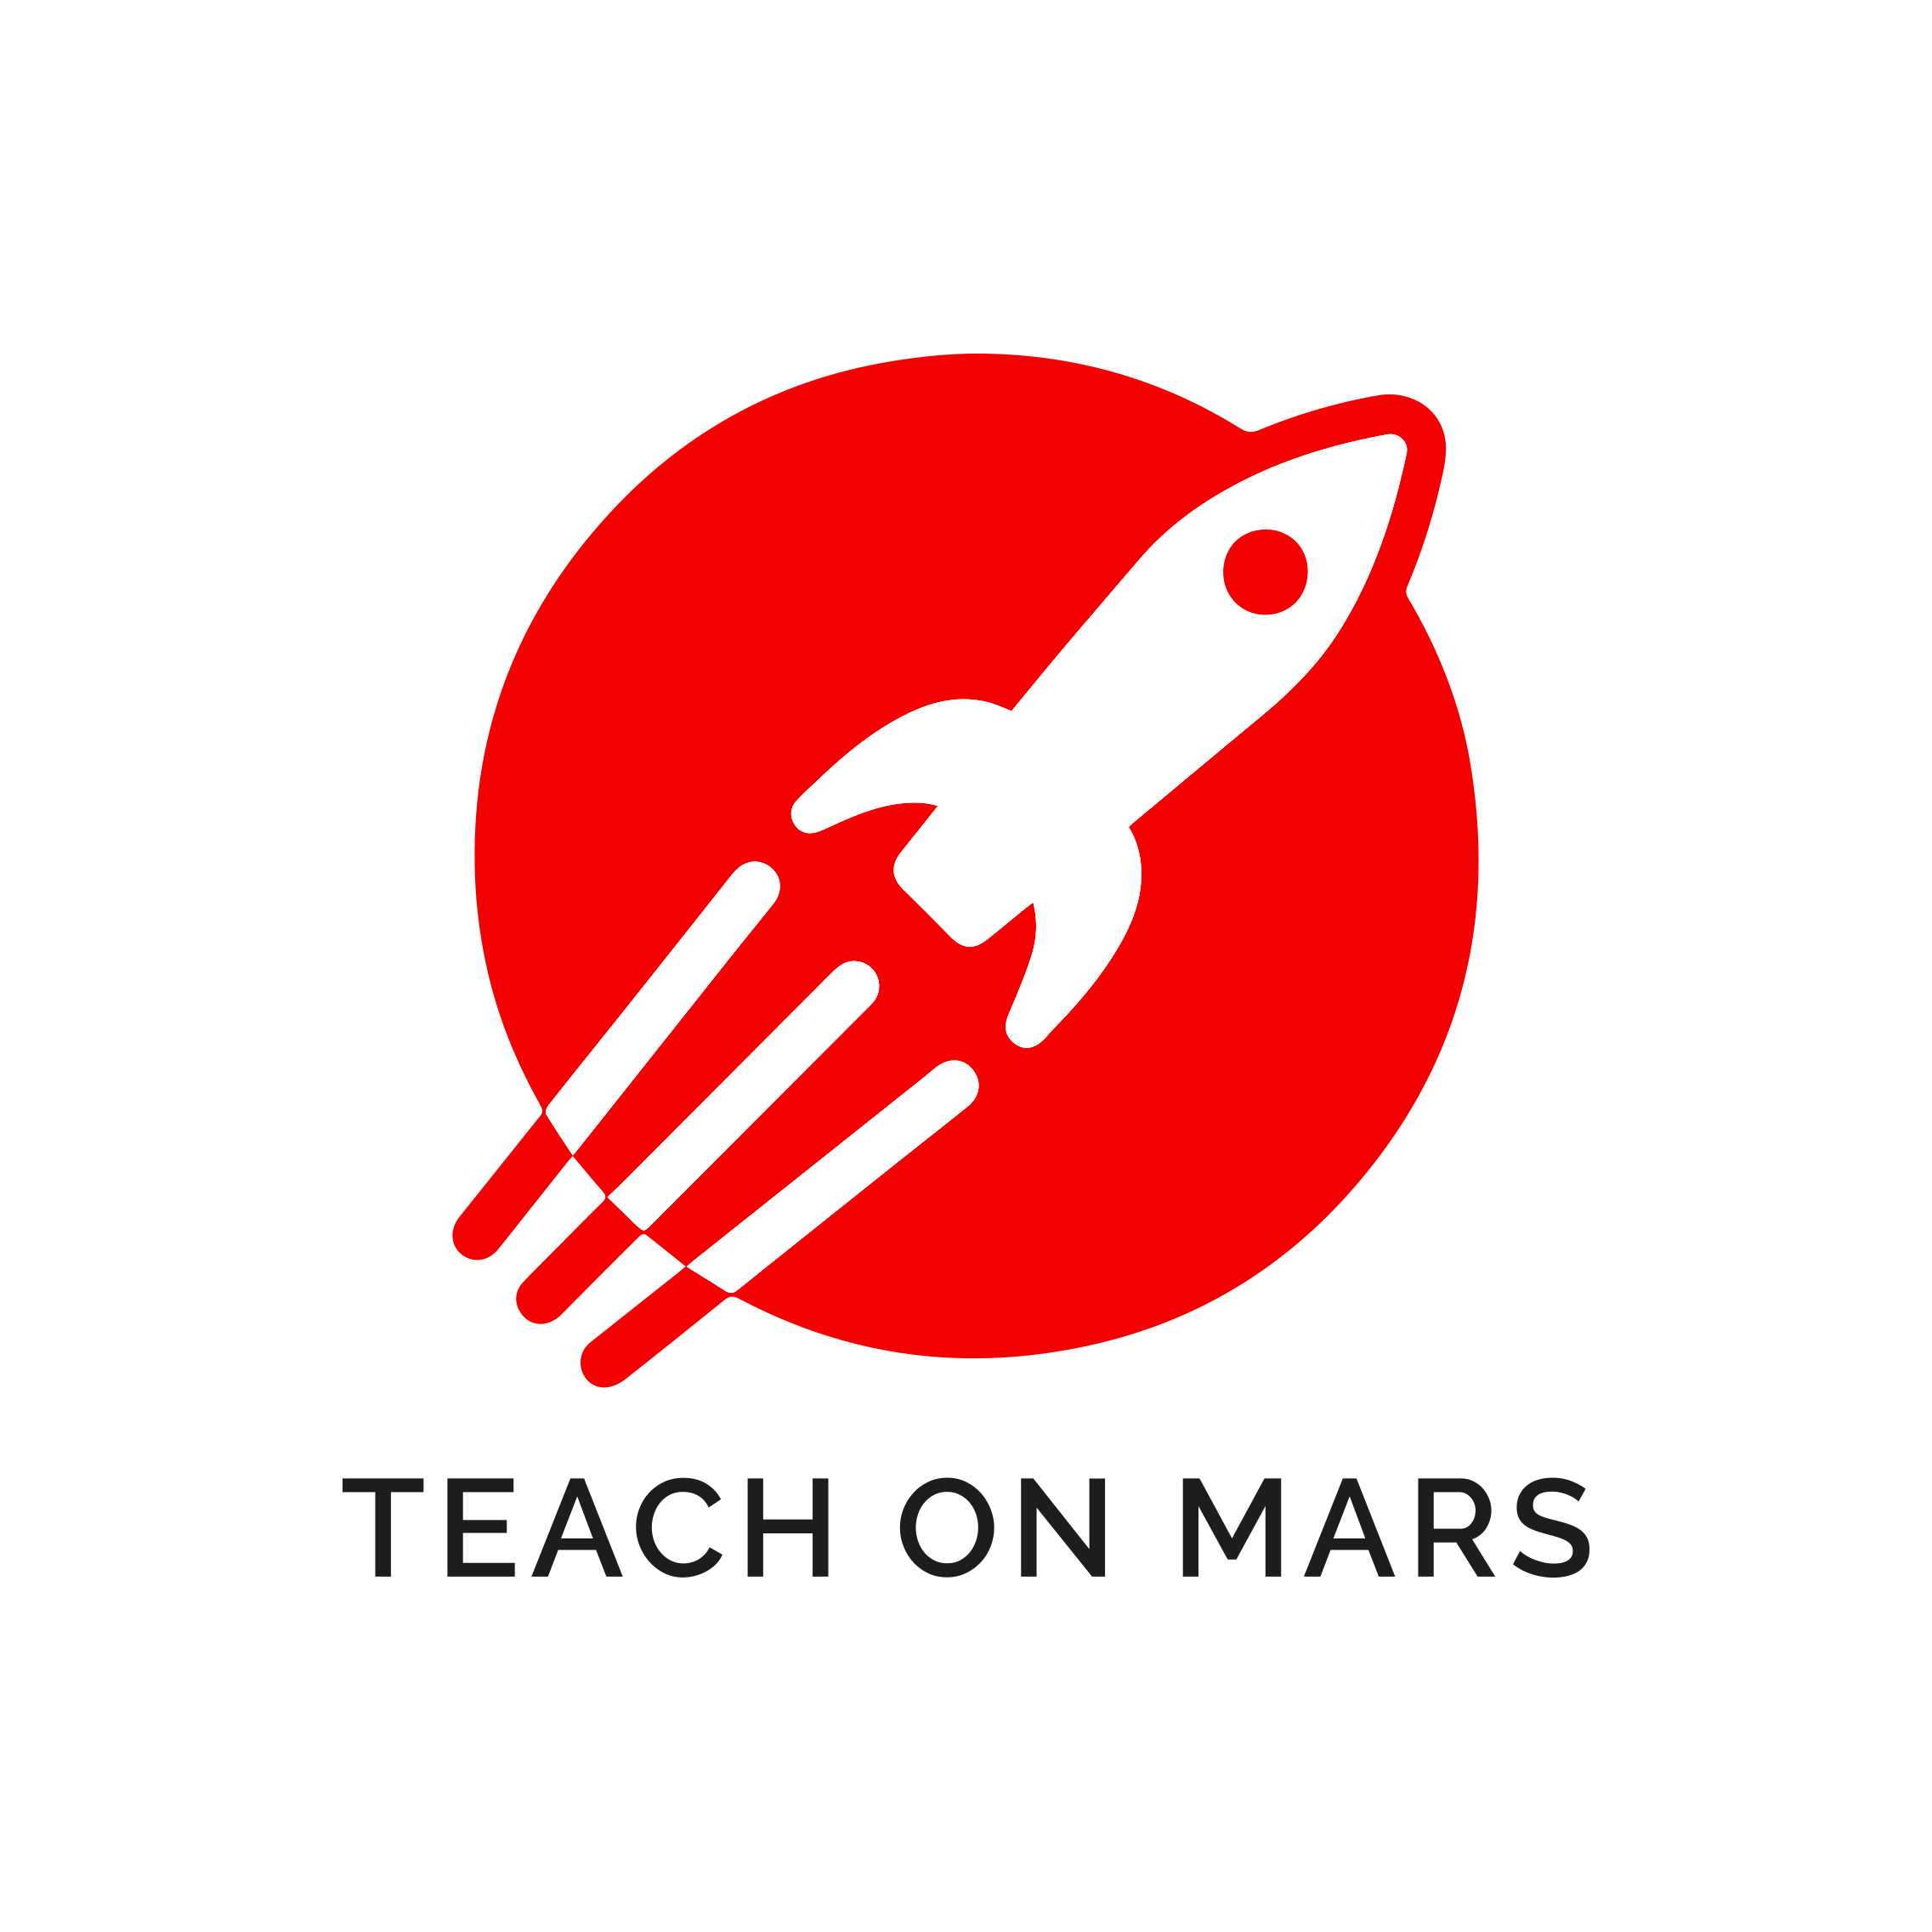 TEACH ON MARS